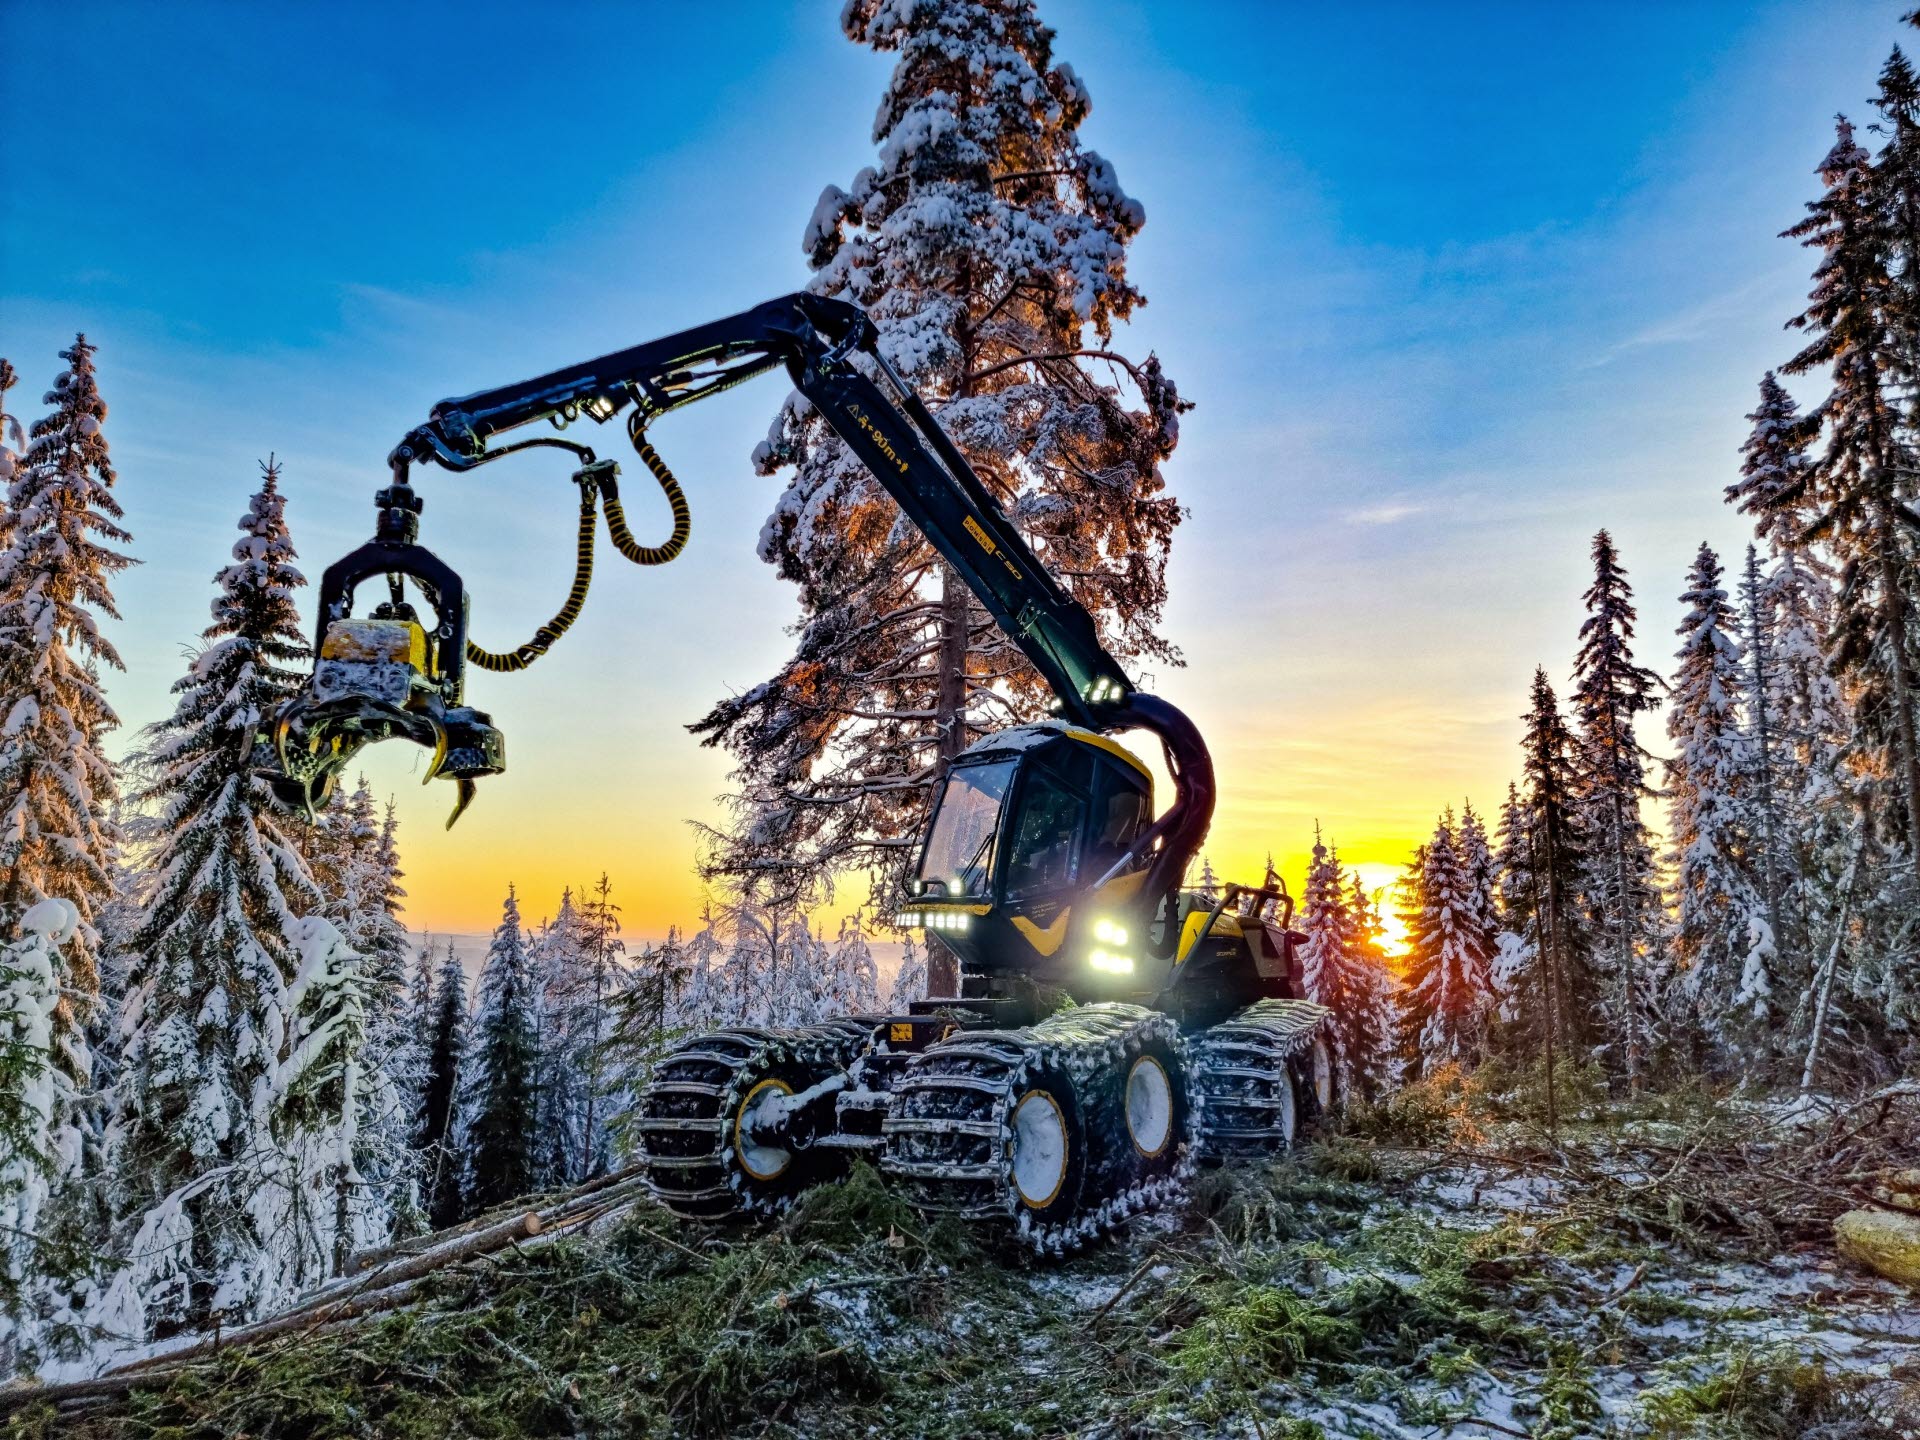 Skogsmaskin under arbete vintertid. I bakgrunden är det solnedgång.